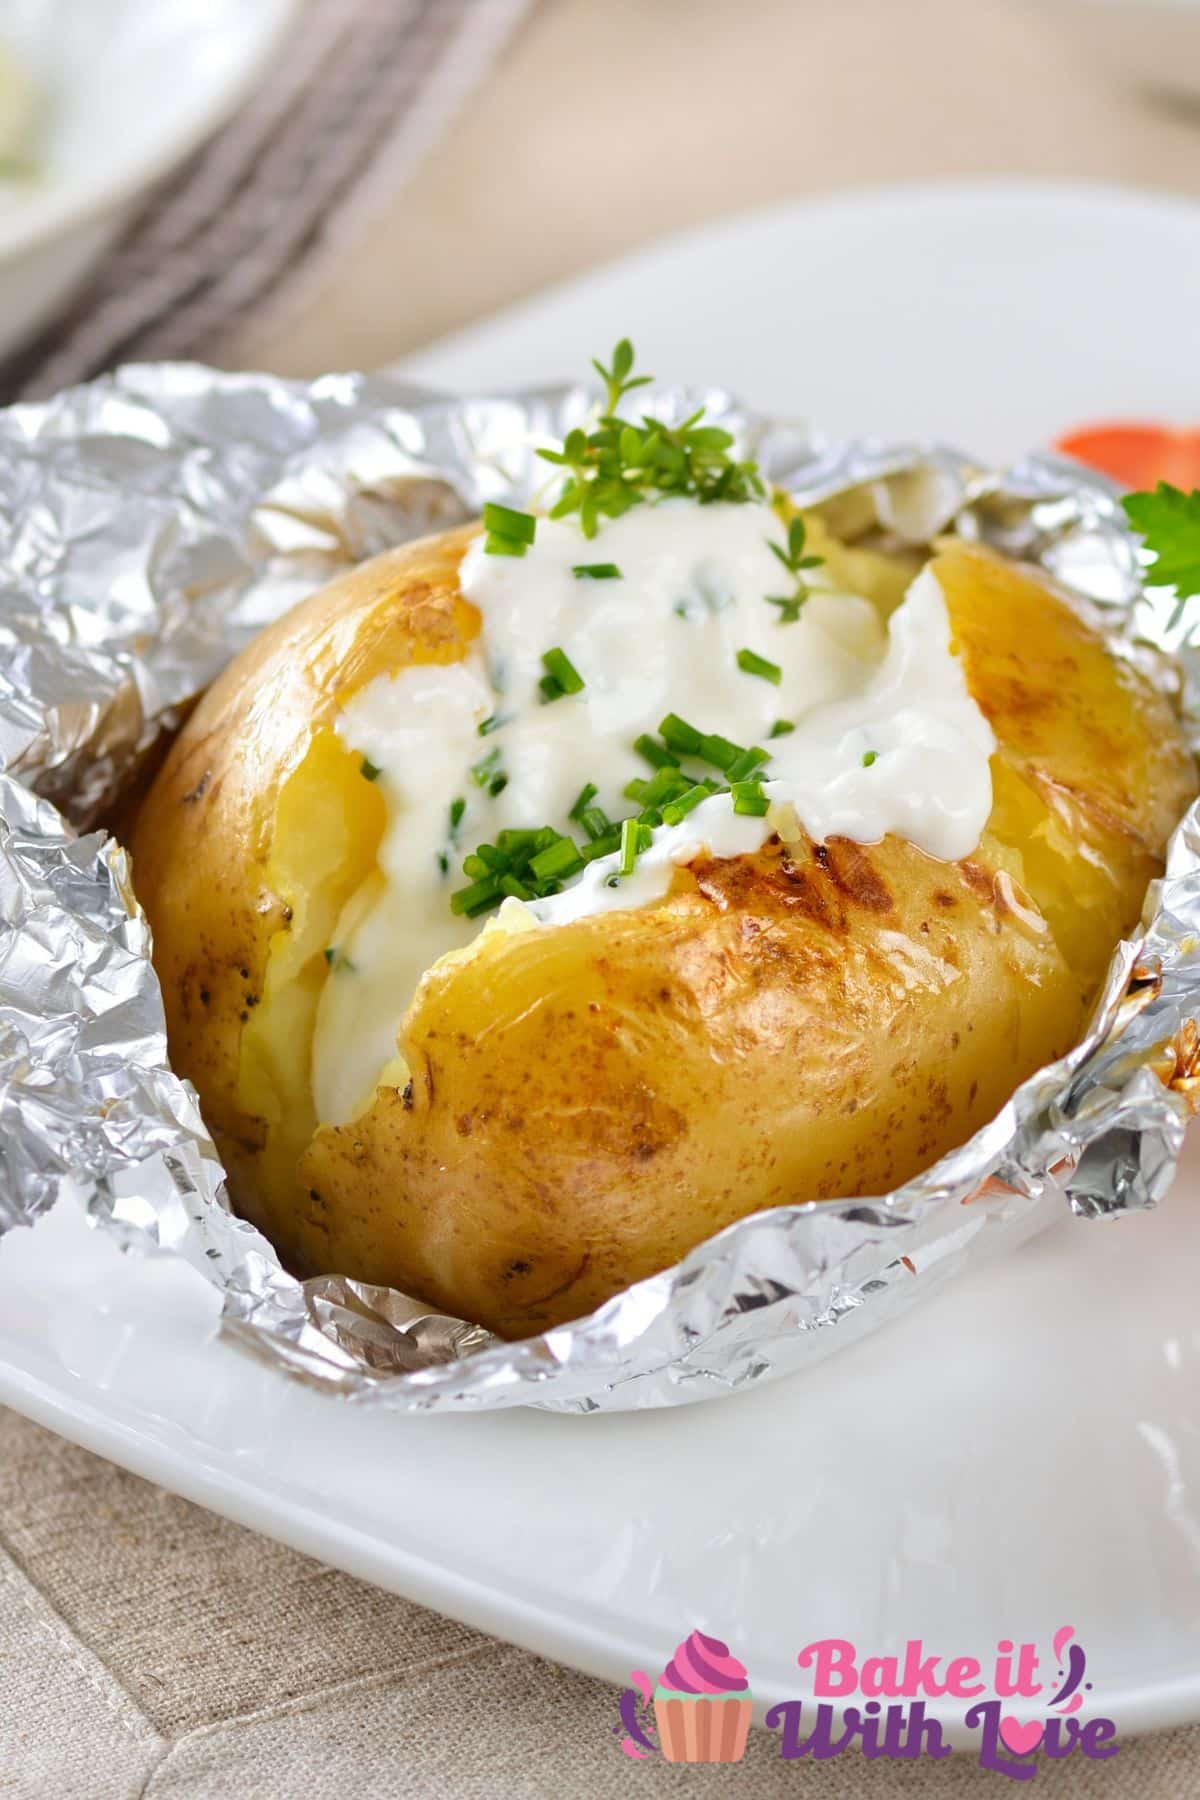 Gambar tinggi menunjukkan kentang panggang di atas piring putih, dengan krim asam dan kucai.